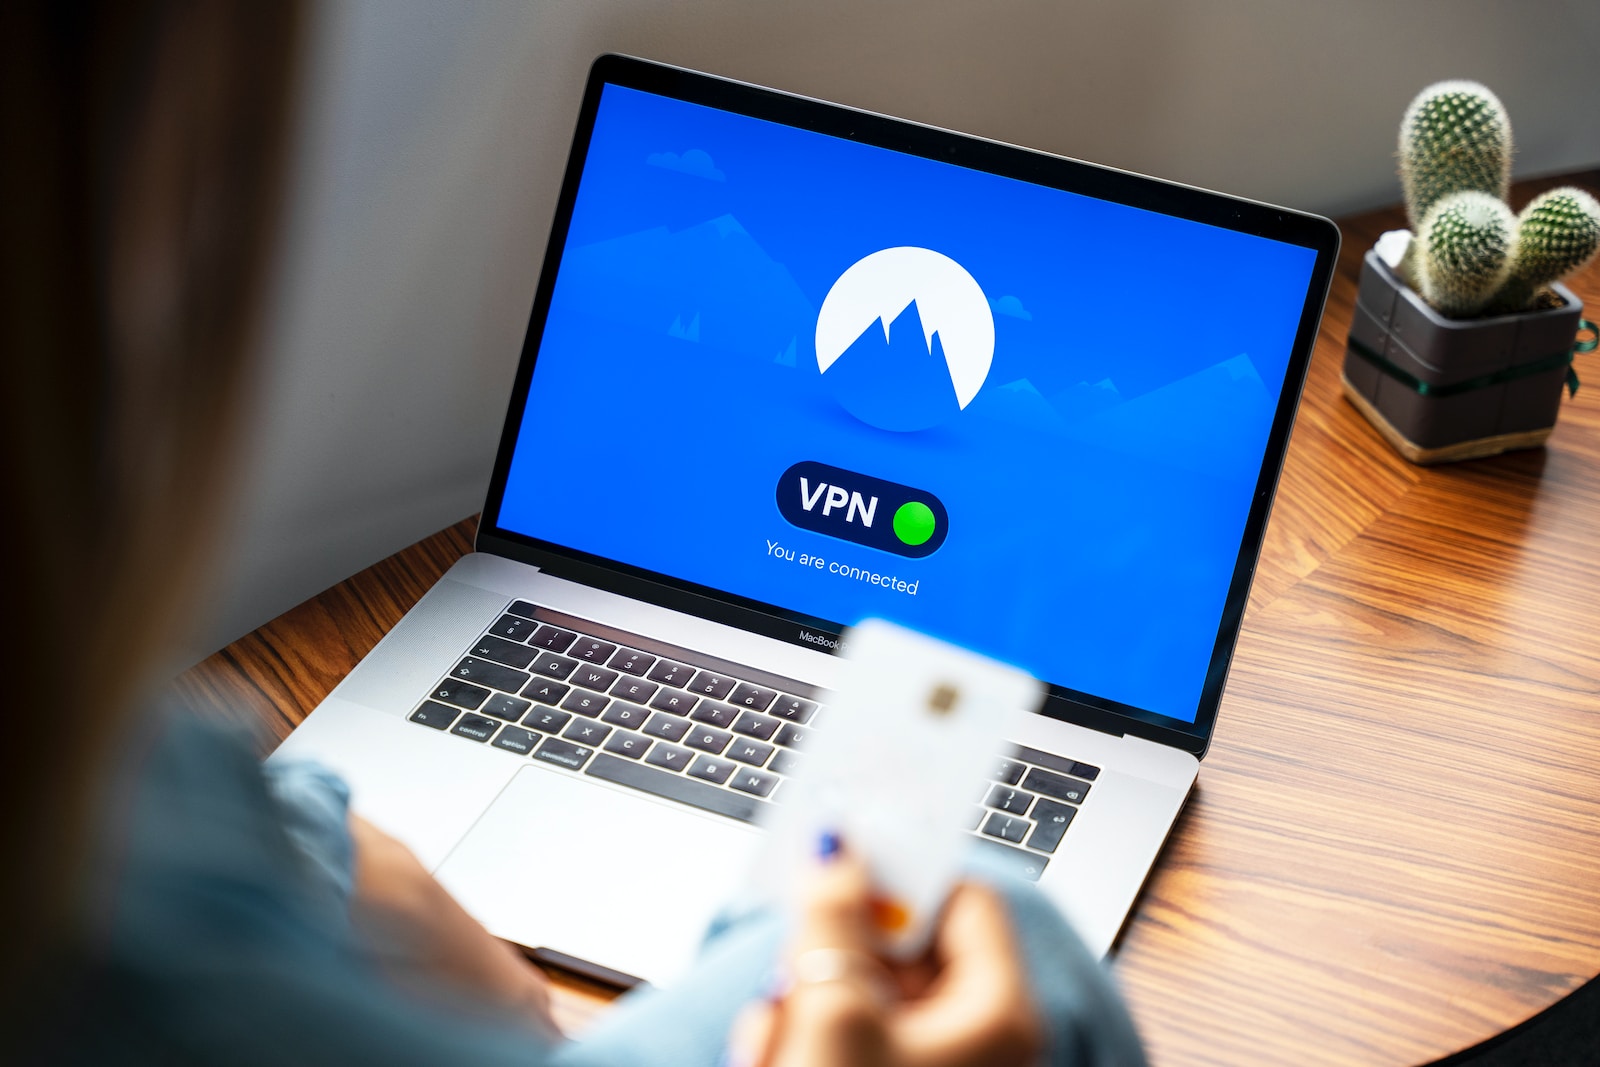 Le gouvernement veut interdire les VPN sur smartphones #4